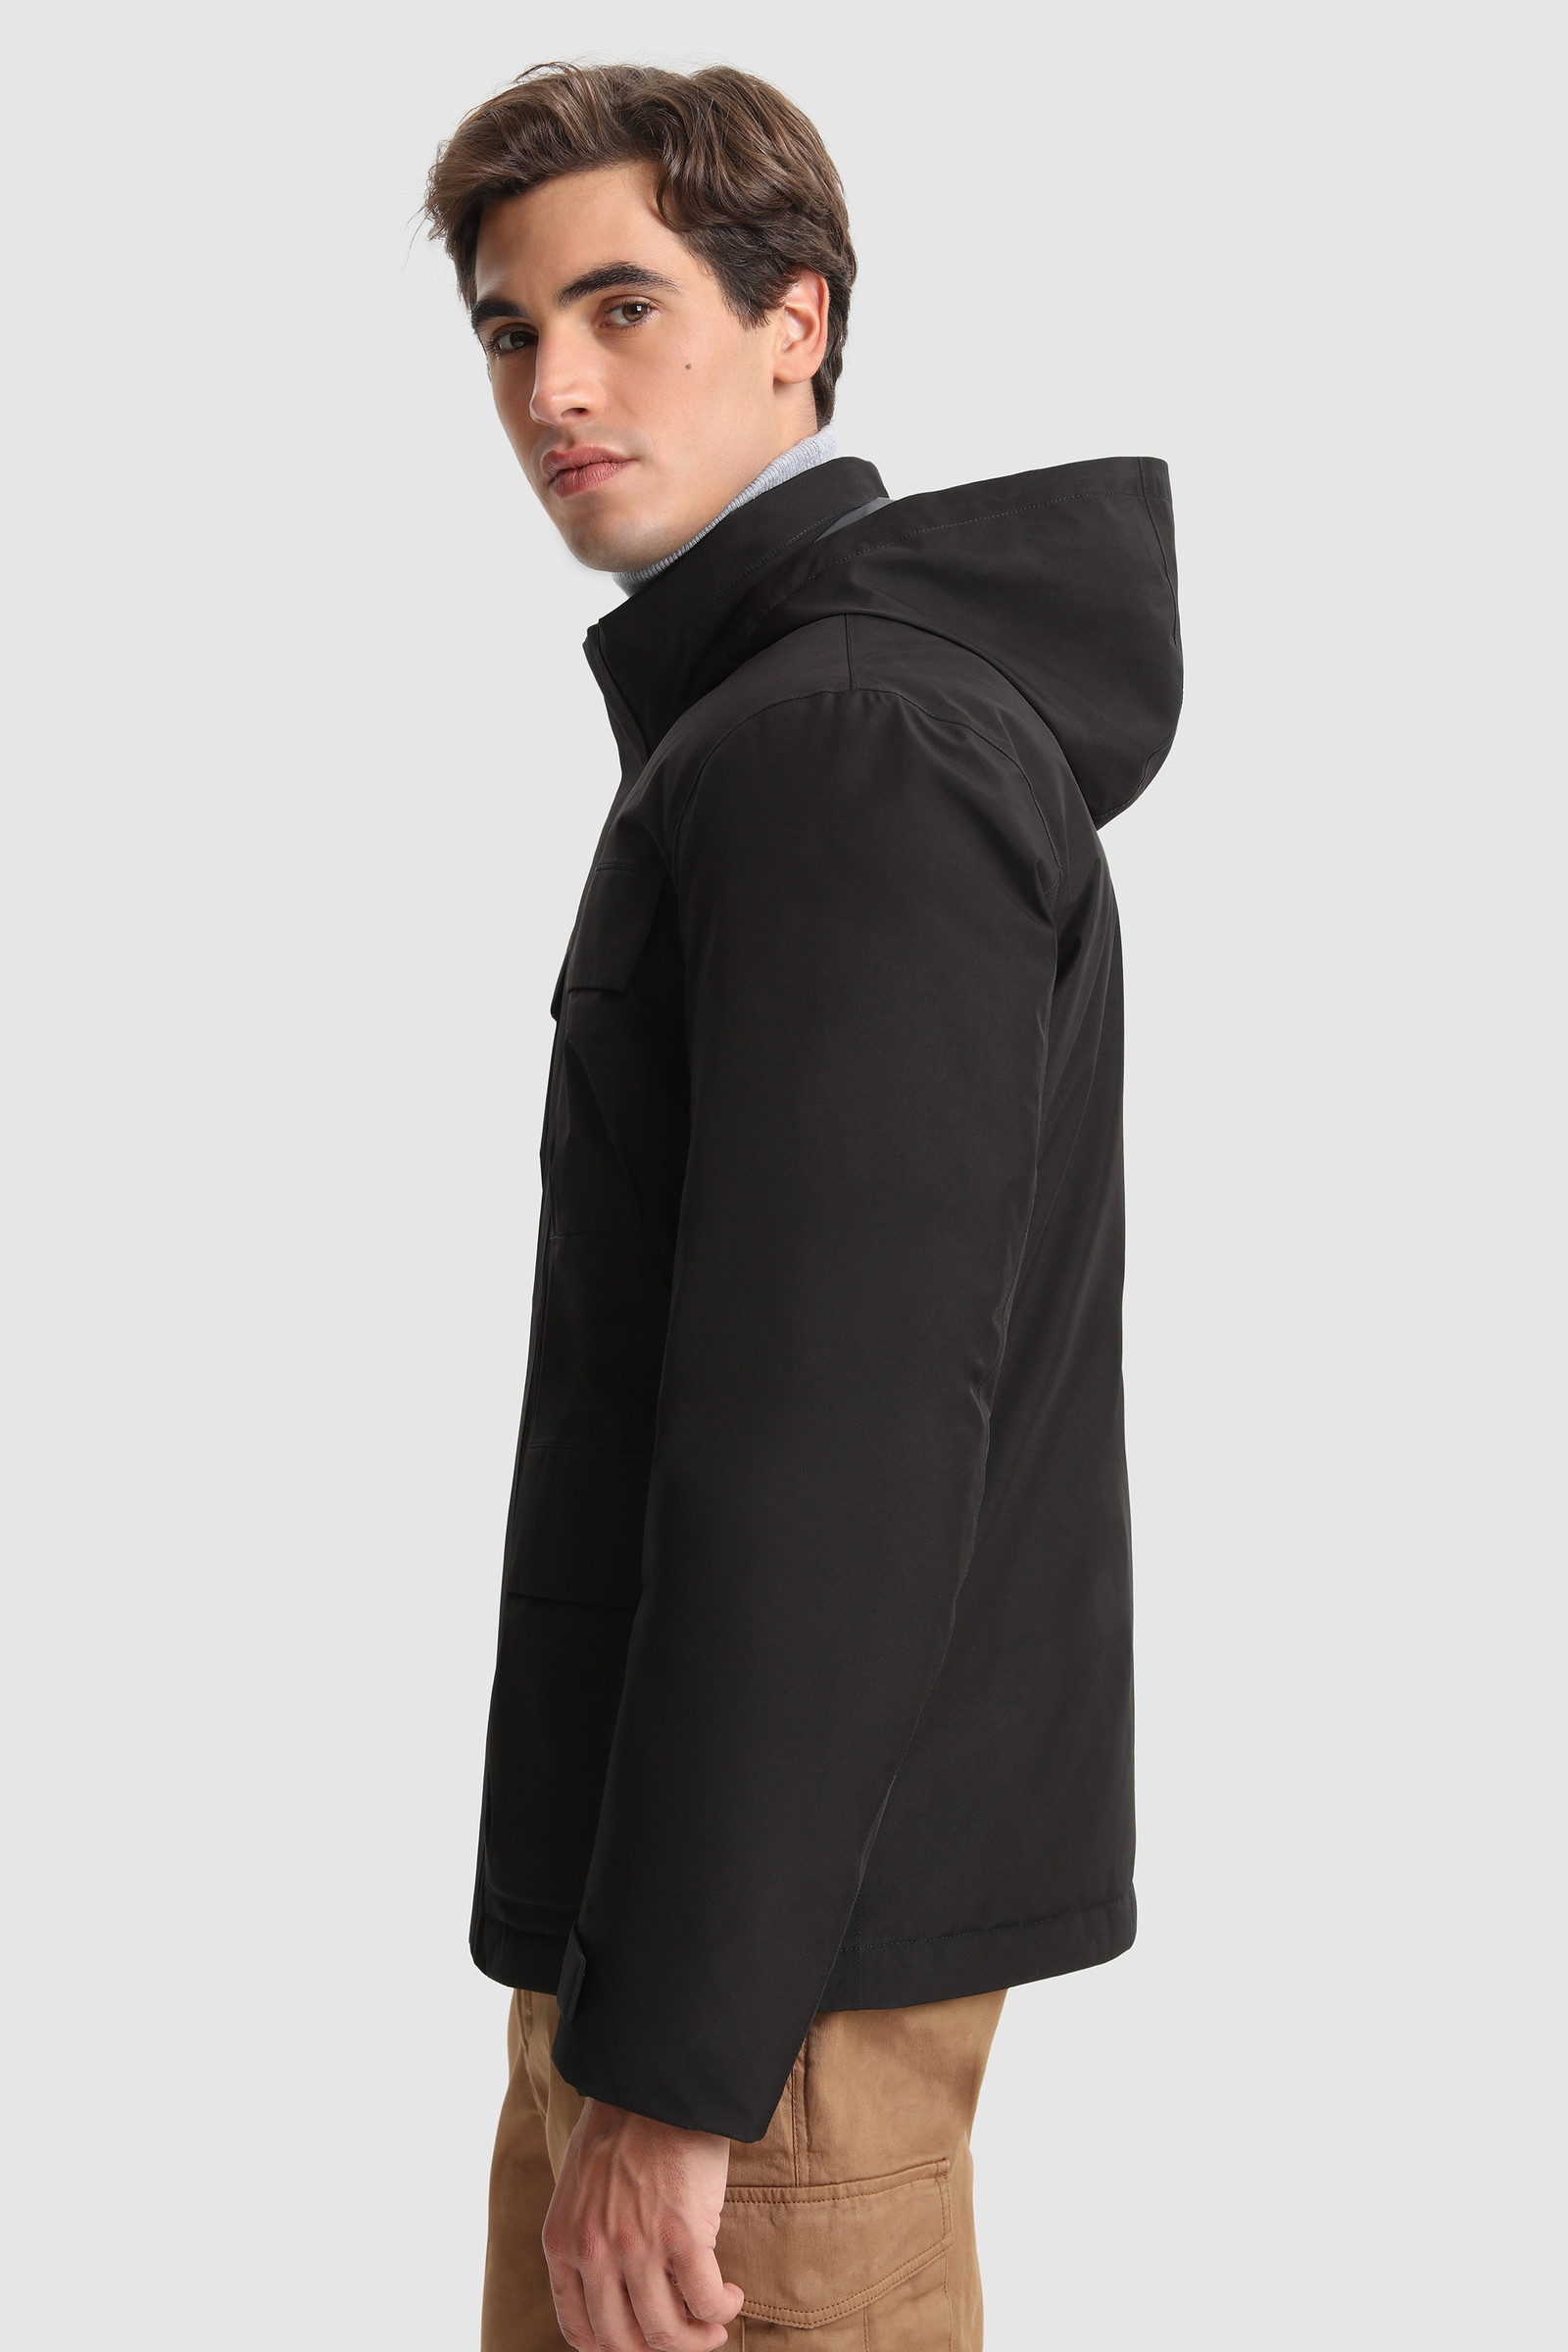 GORE-TEX Urban Field Jacket with Hidden Hood - Men - Black